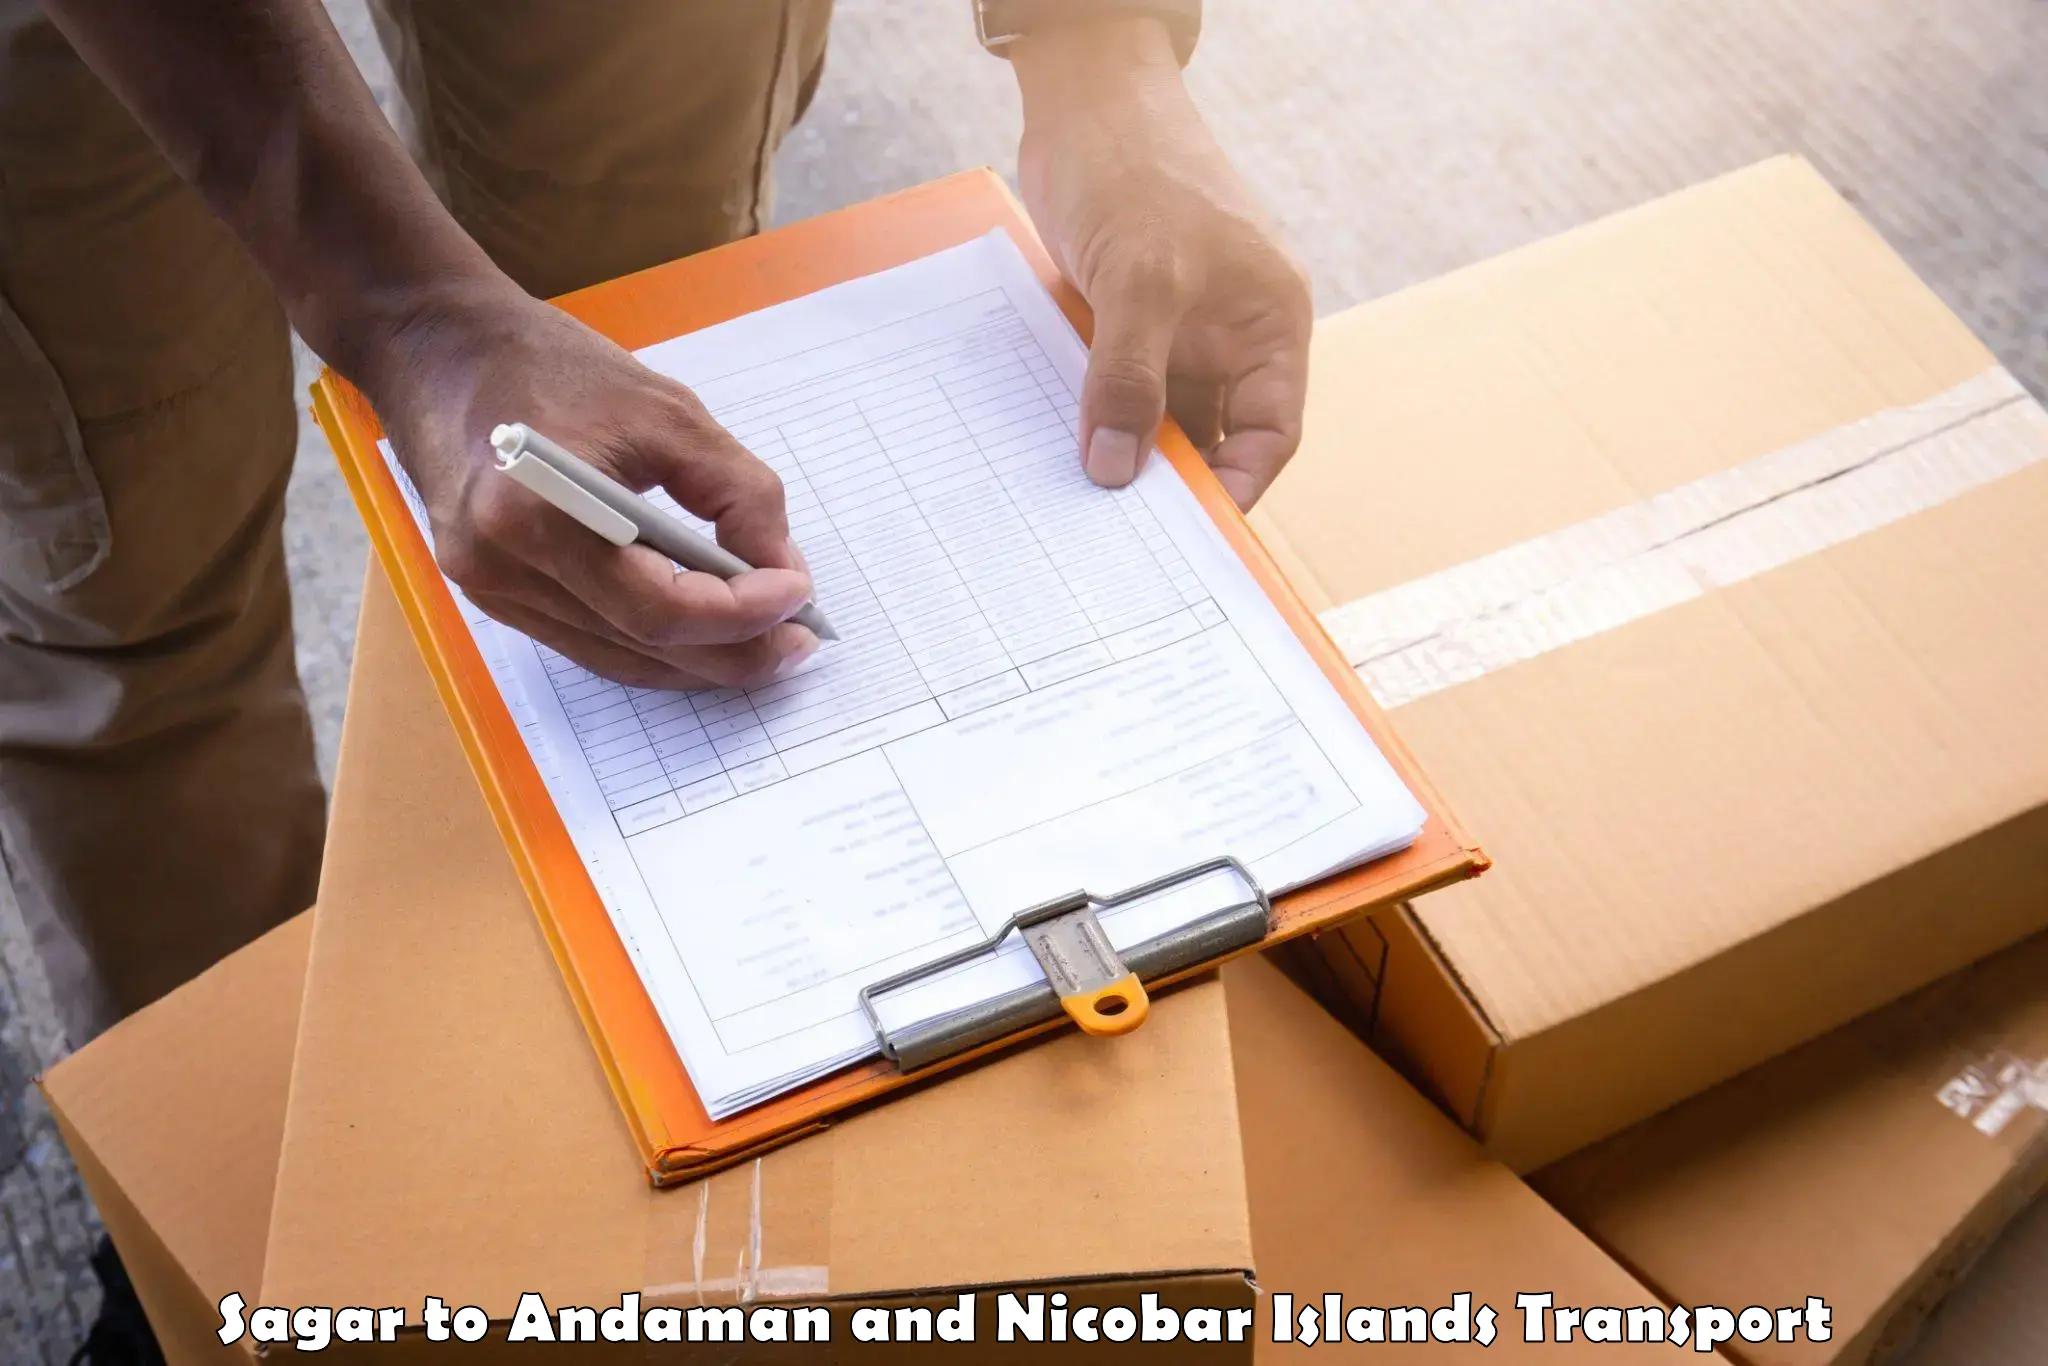 Nearest transport service Sagar to Andaman and Nicobar Islands